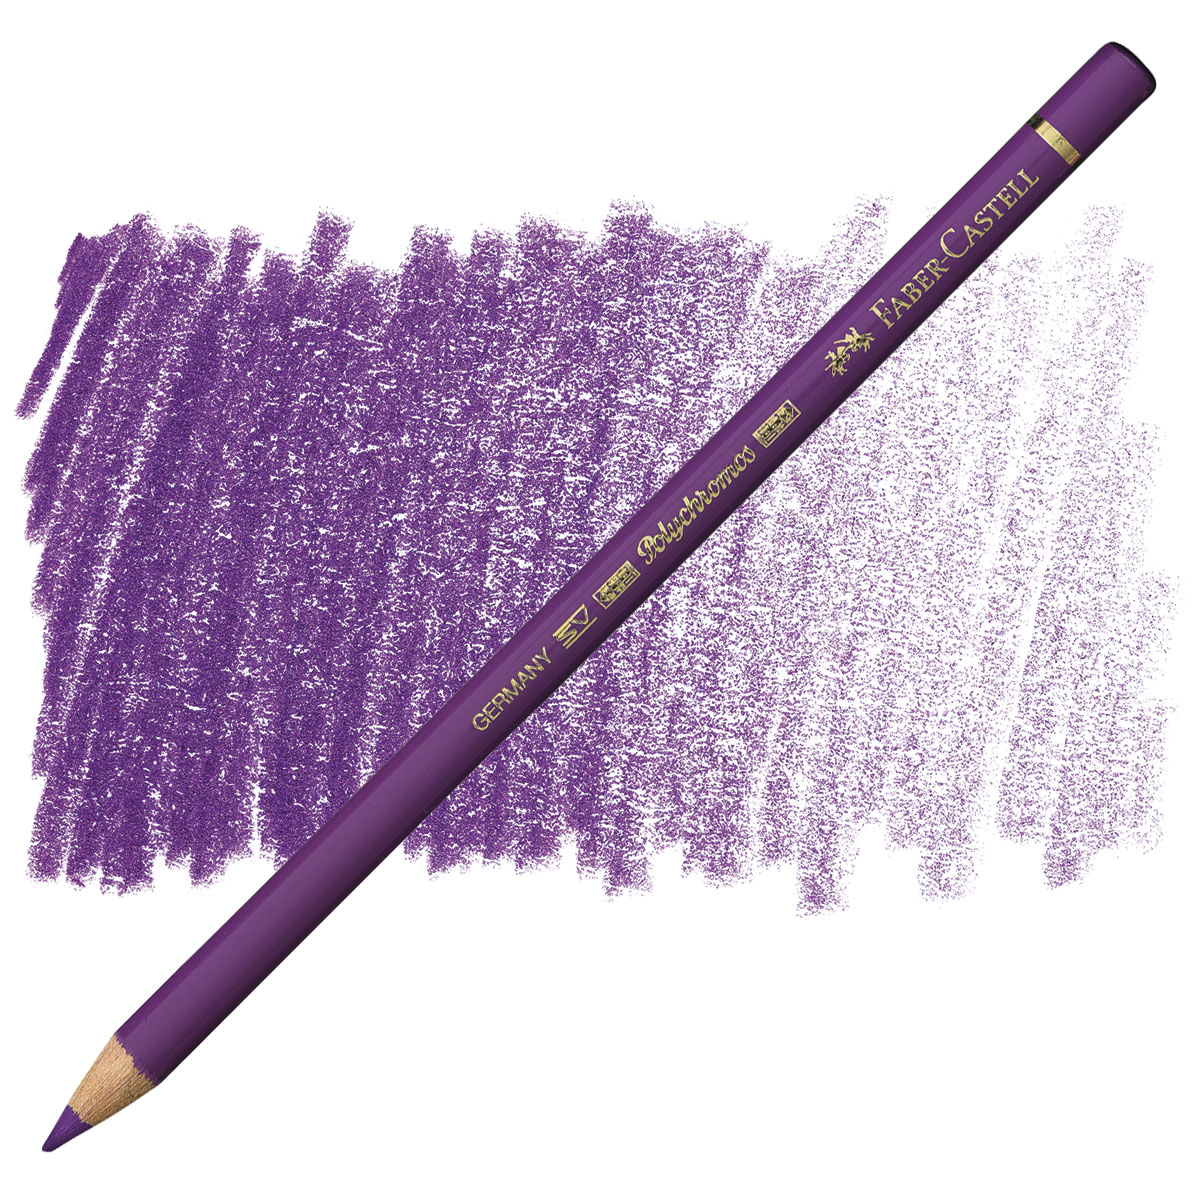 160 manganese violet